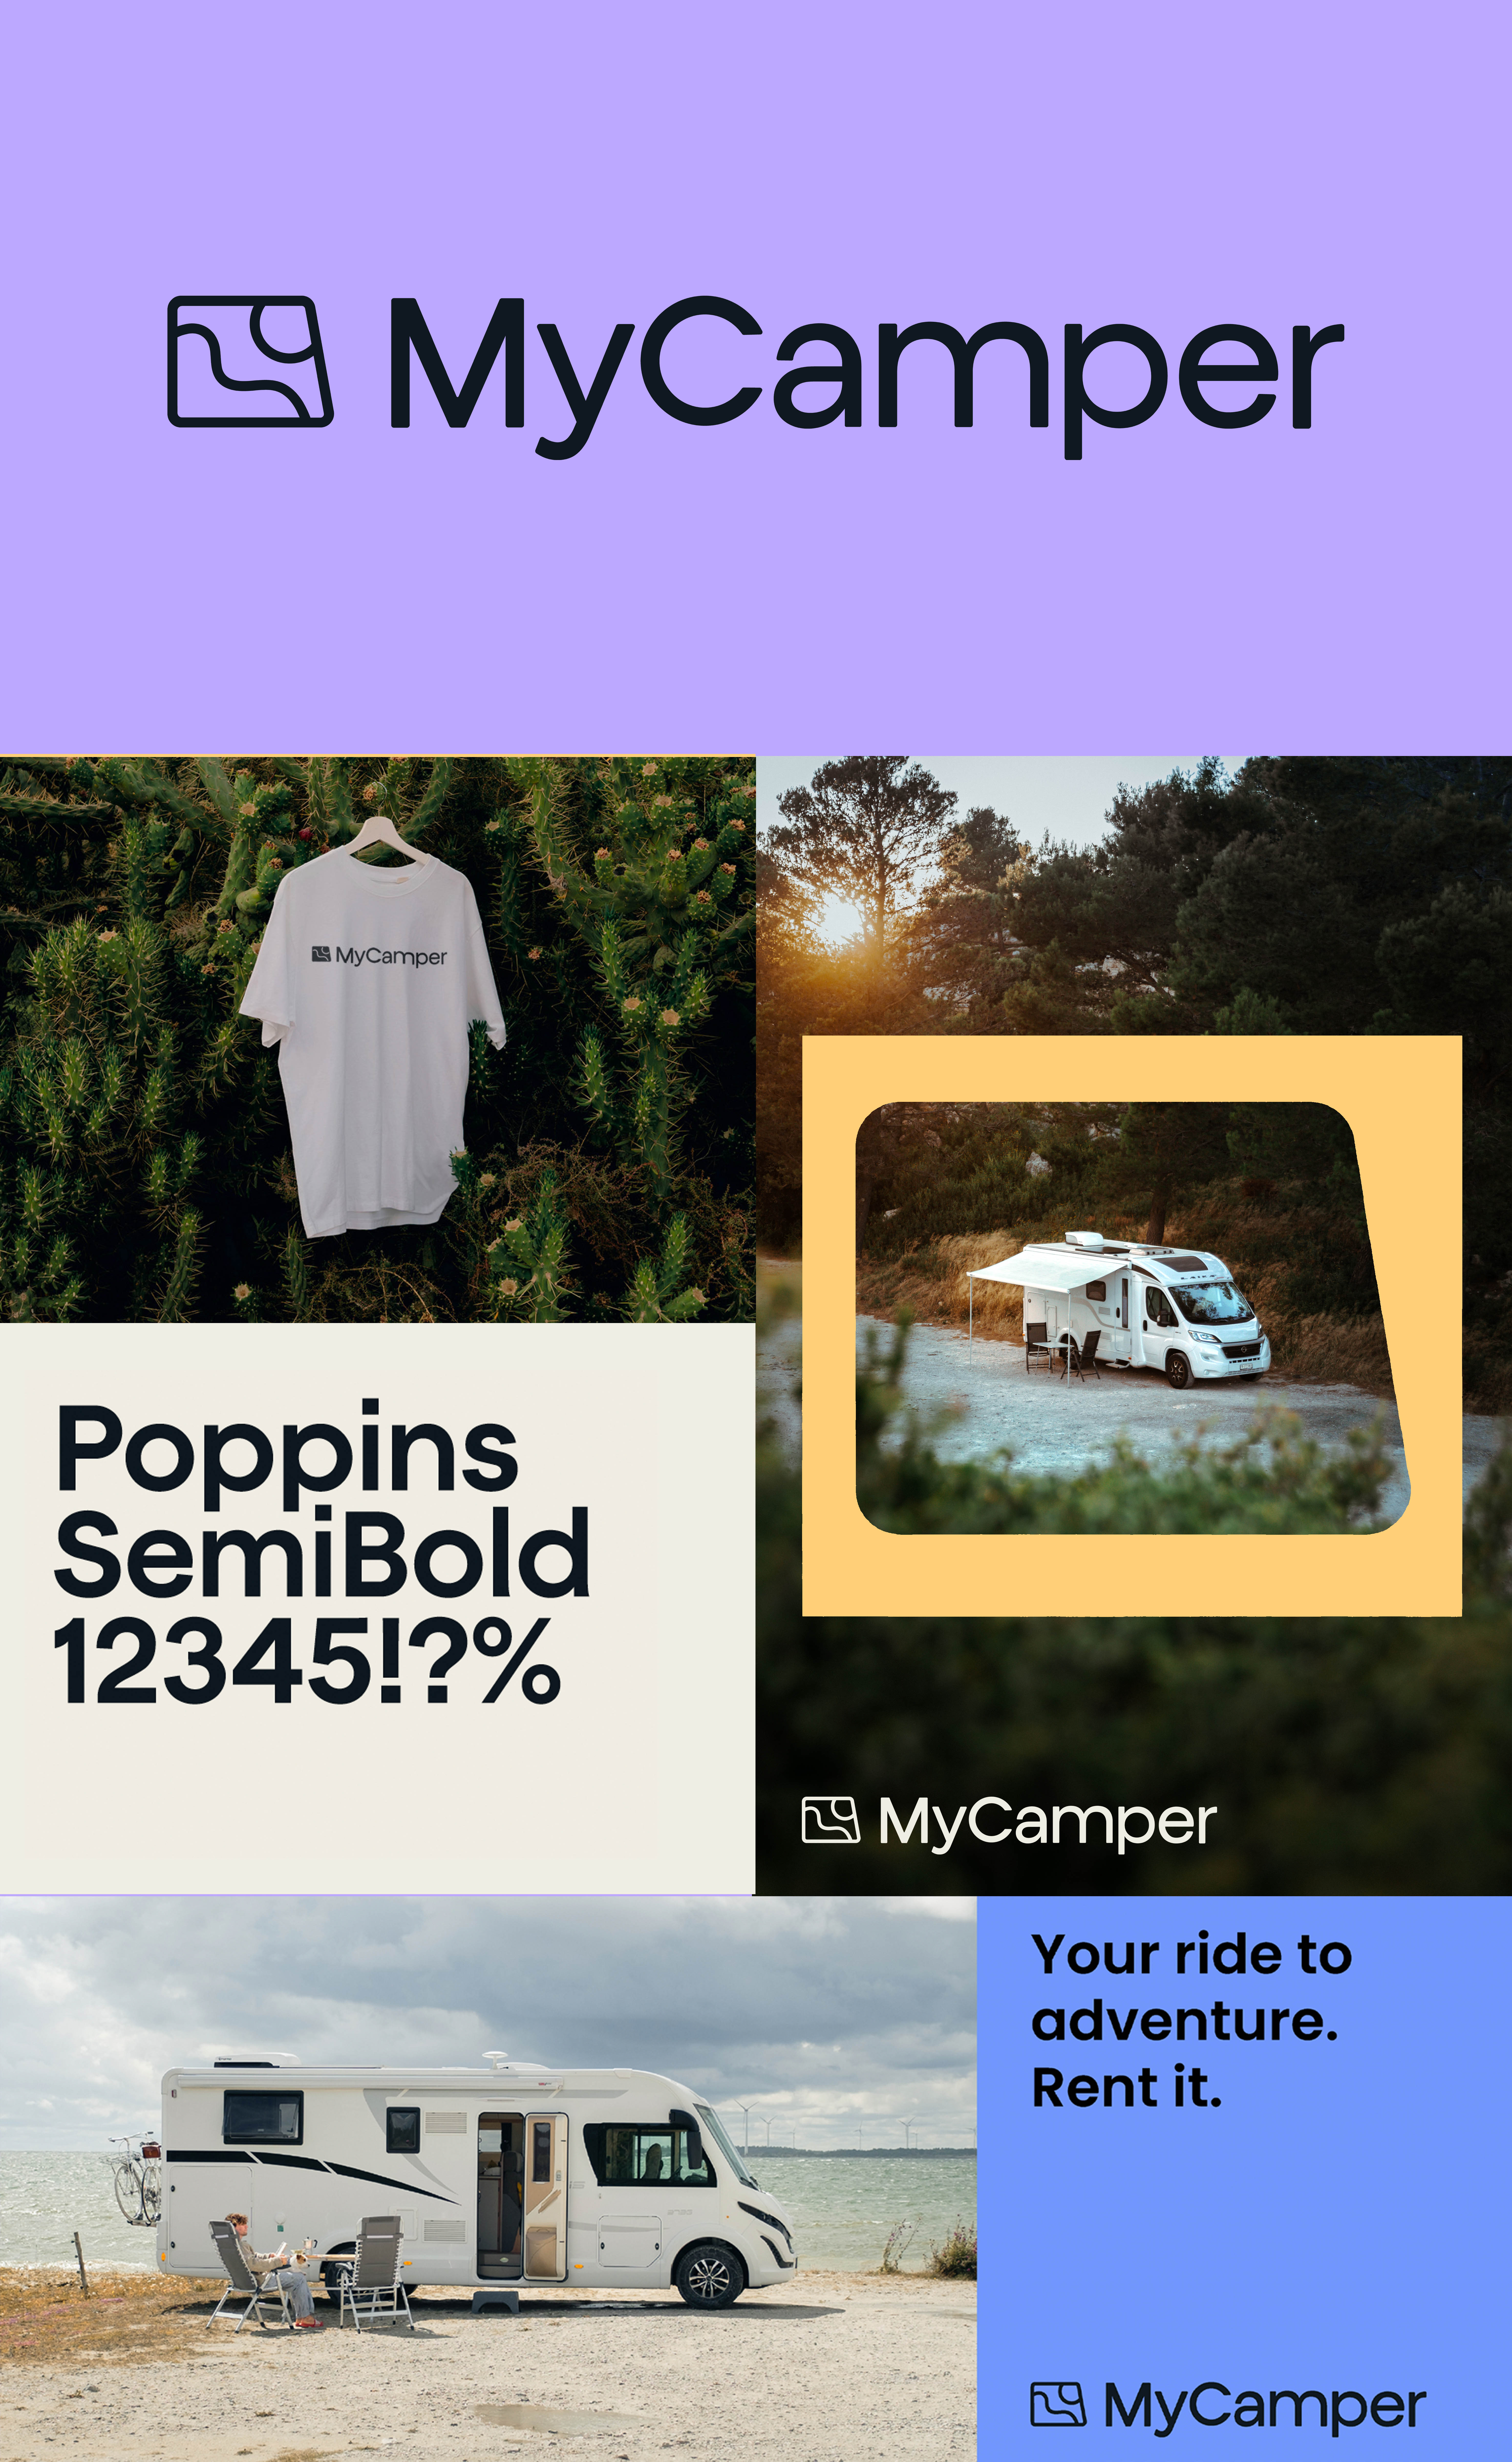 Le nouvel univers de la marque MyCamper est chaleureux, accessible et sérieux.